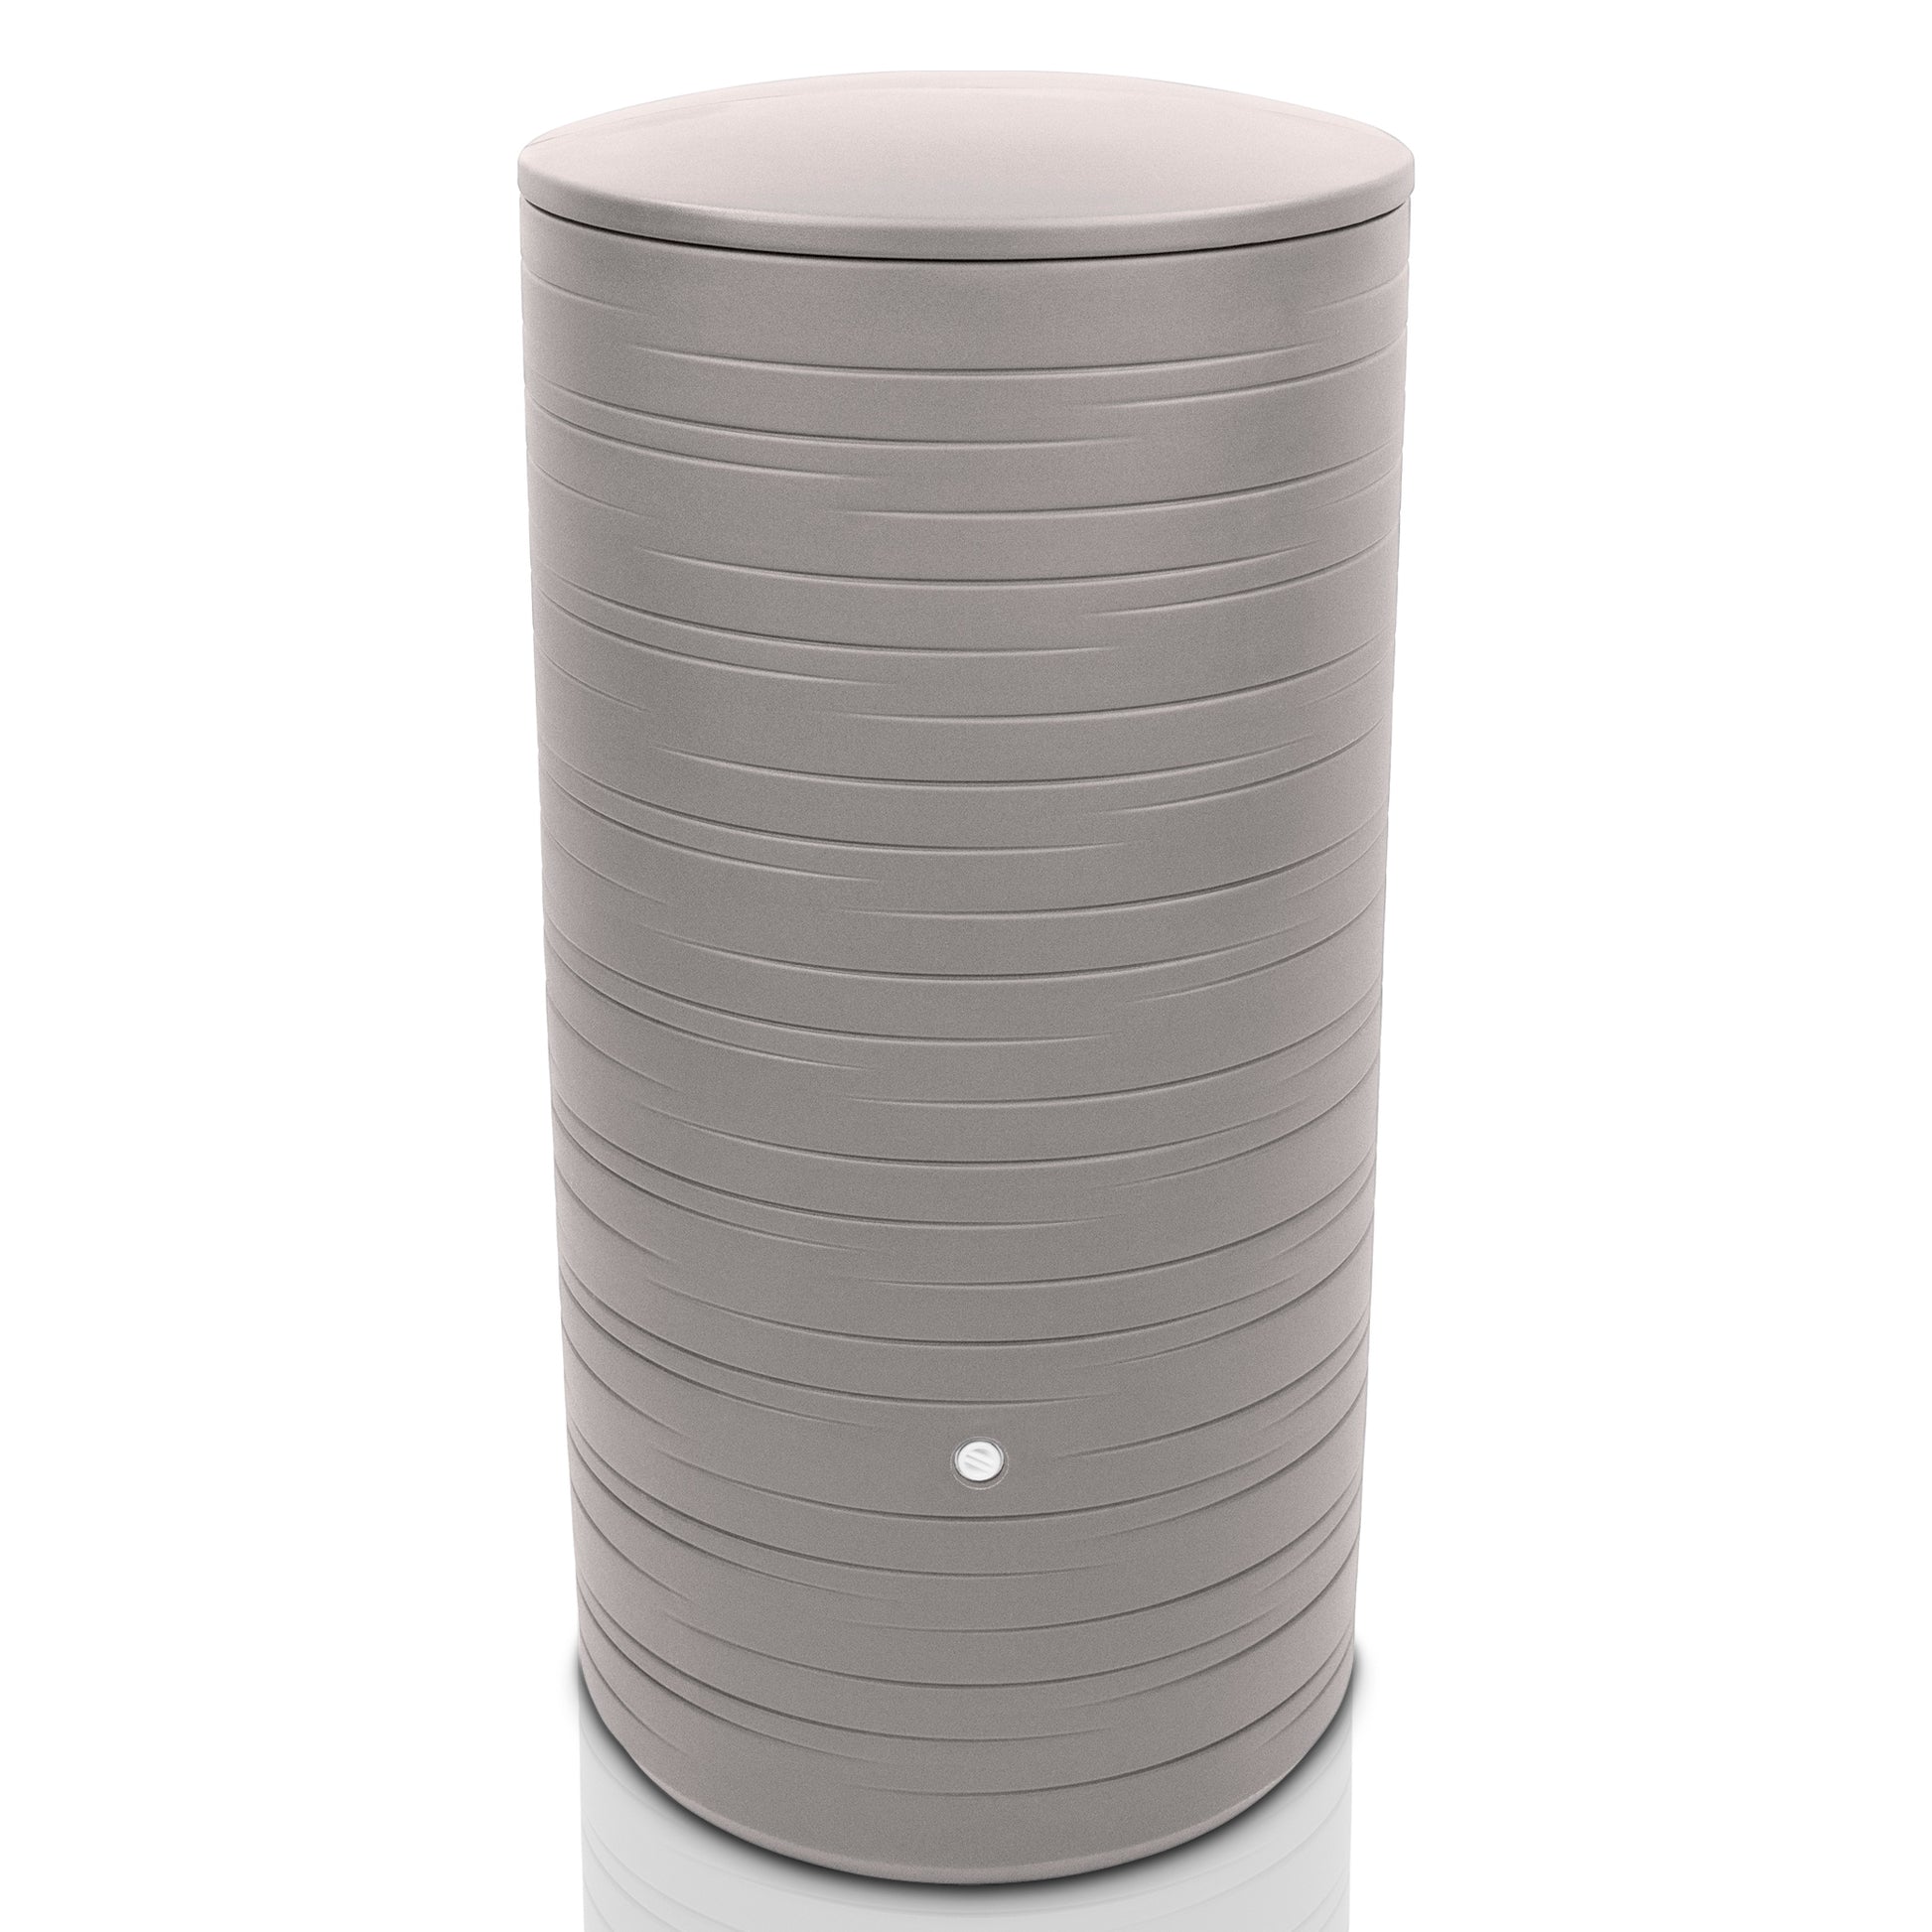 Moderne zylindrische YourCasa Regentonne 280 Liter [PureRain] mit strukturiertem Boden und glatter Oberseite auf weißem Hintergrund.